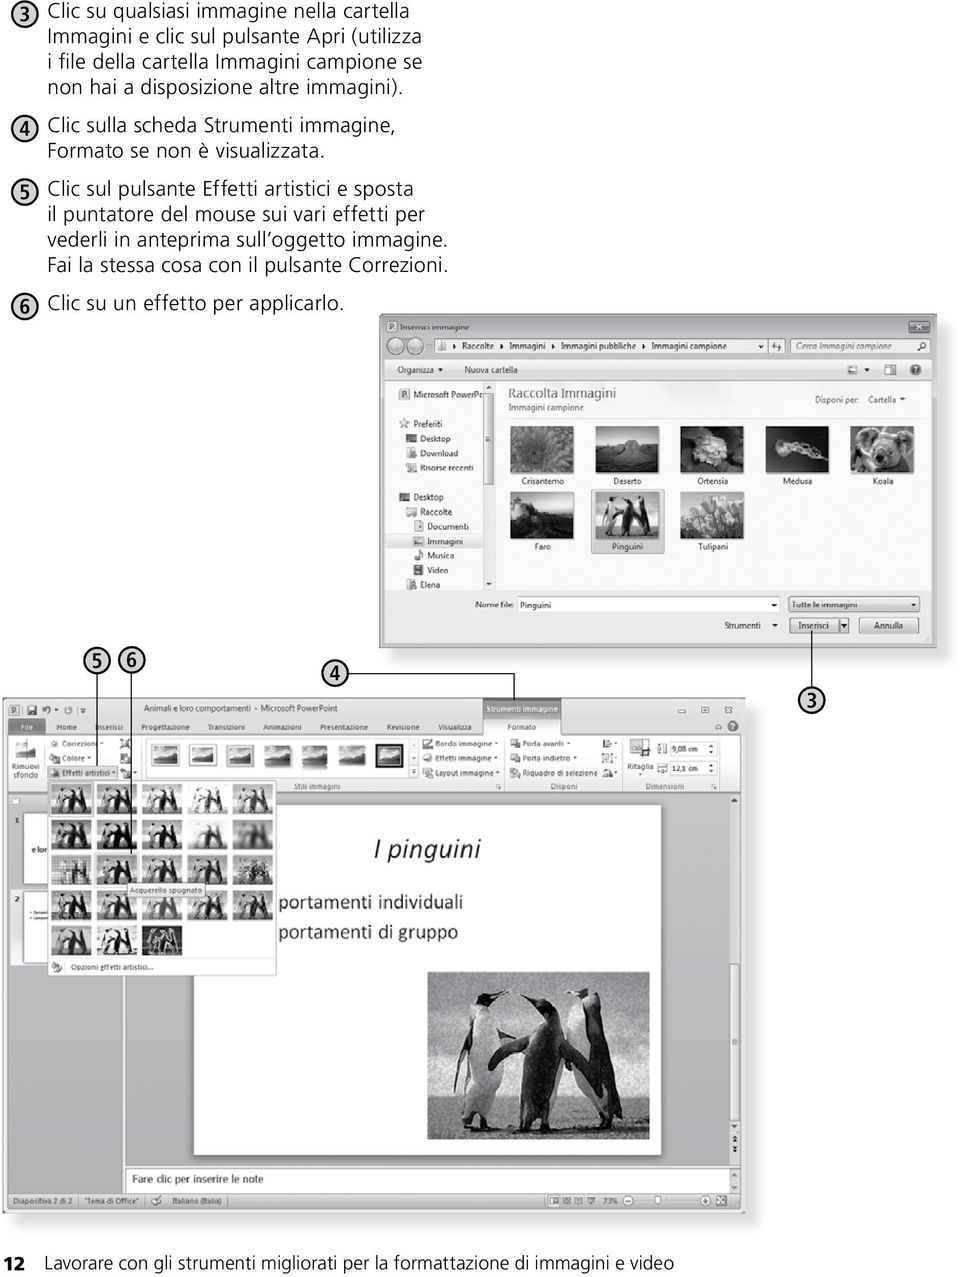 5 Clic sul pulsante Effetti artistici e sposta il puntatore del mouse sui vari effetti per vederli in anteprima sull oggetto immagine.